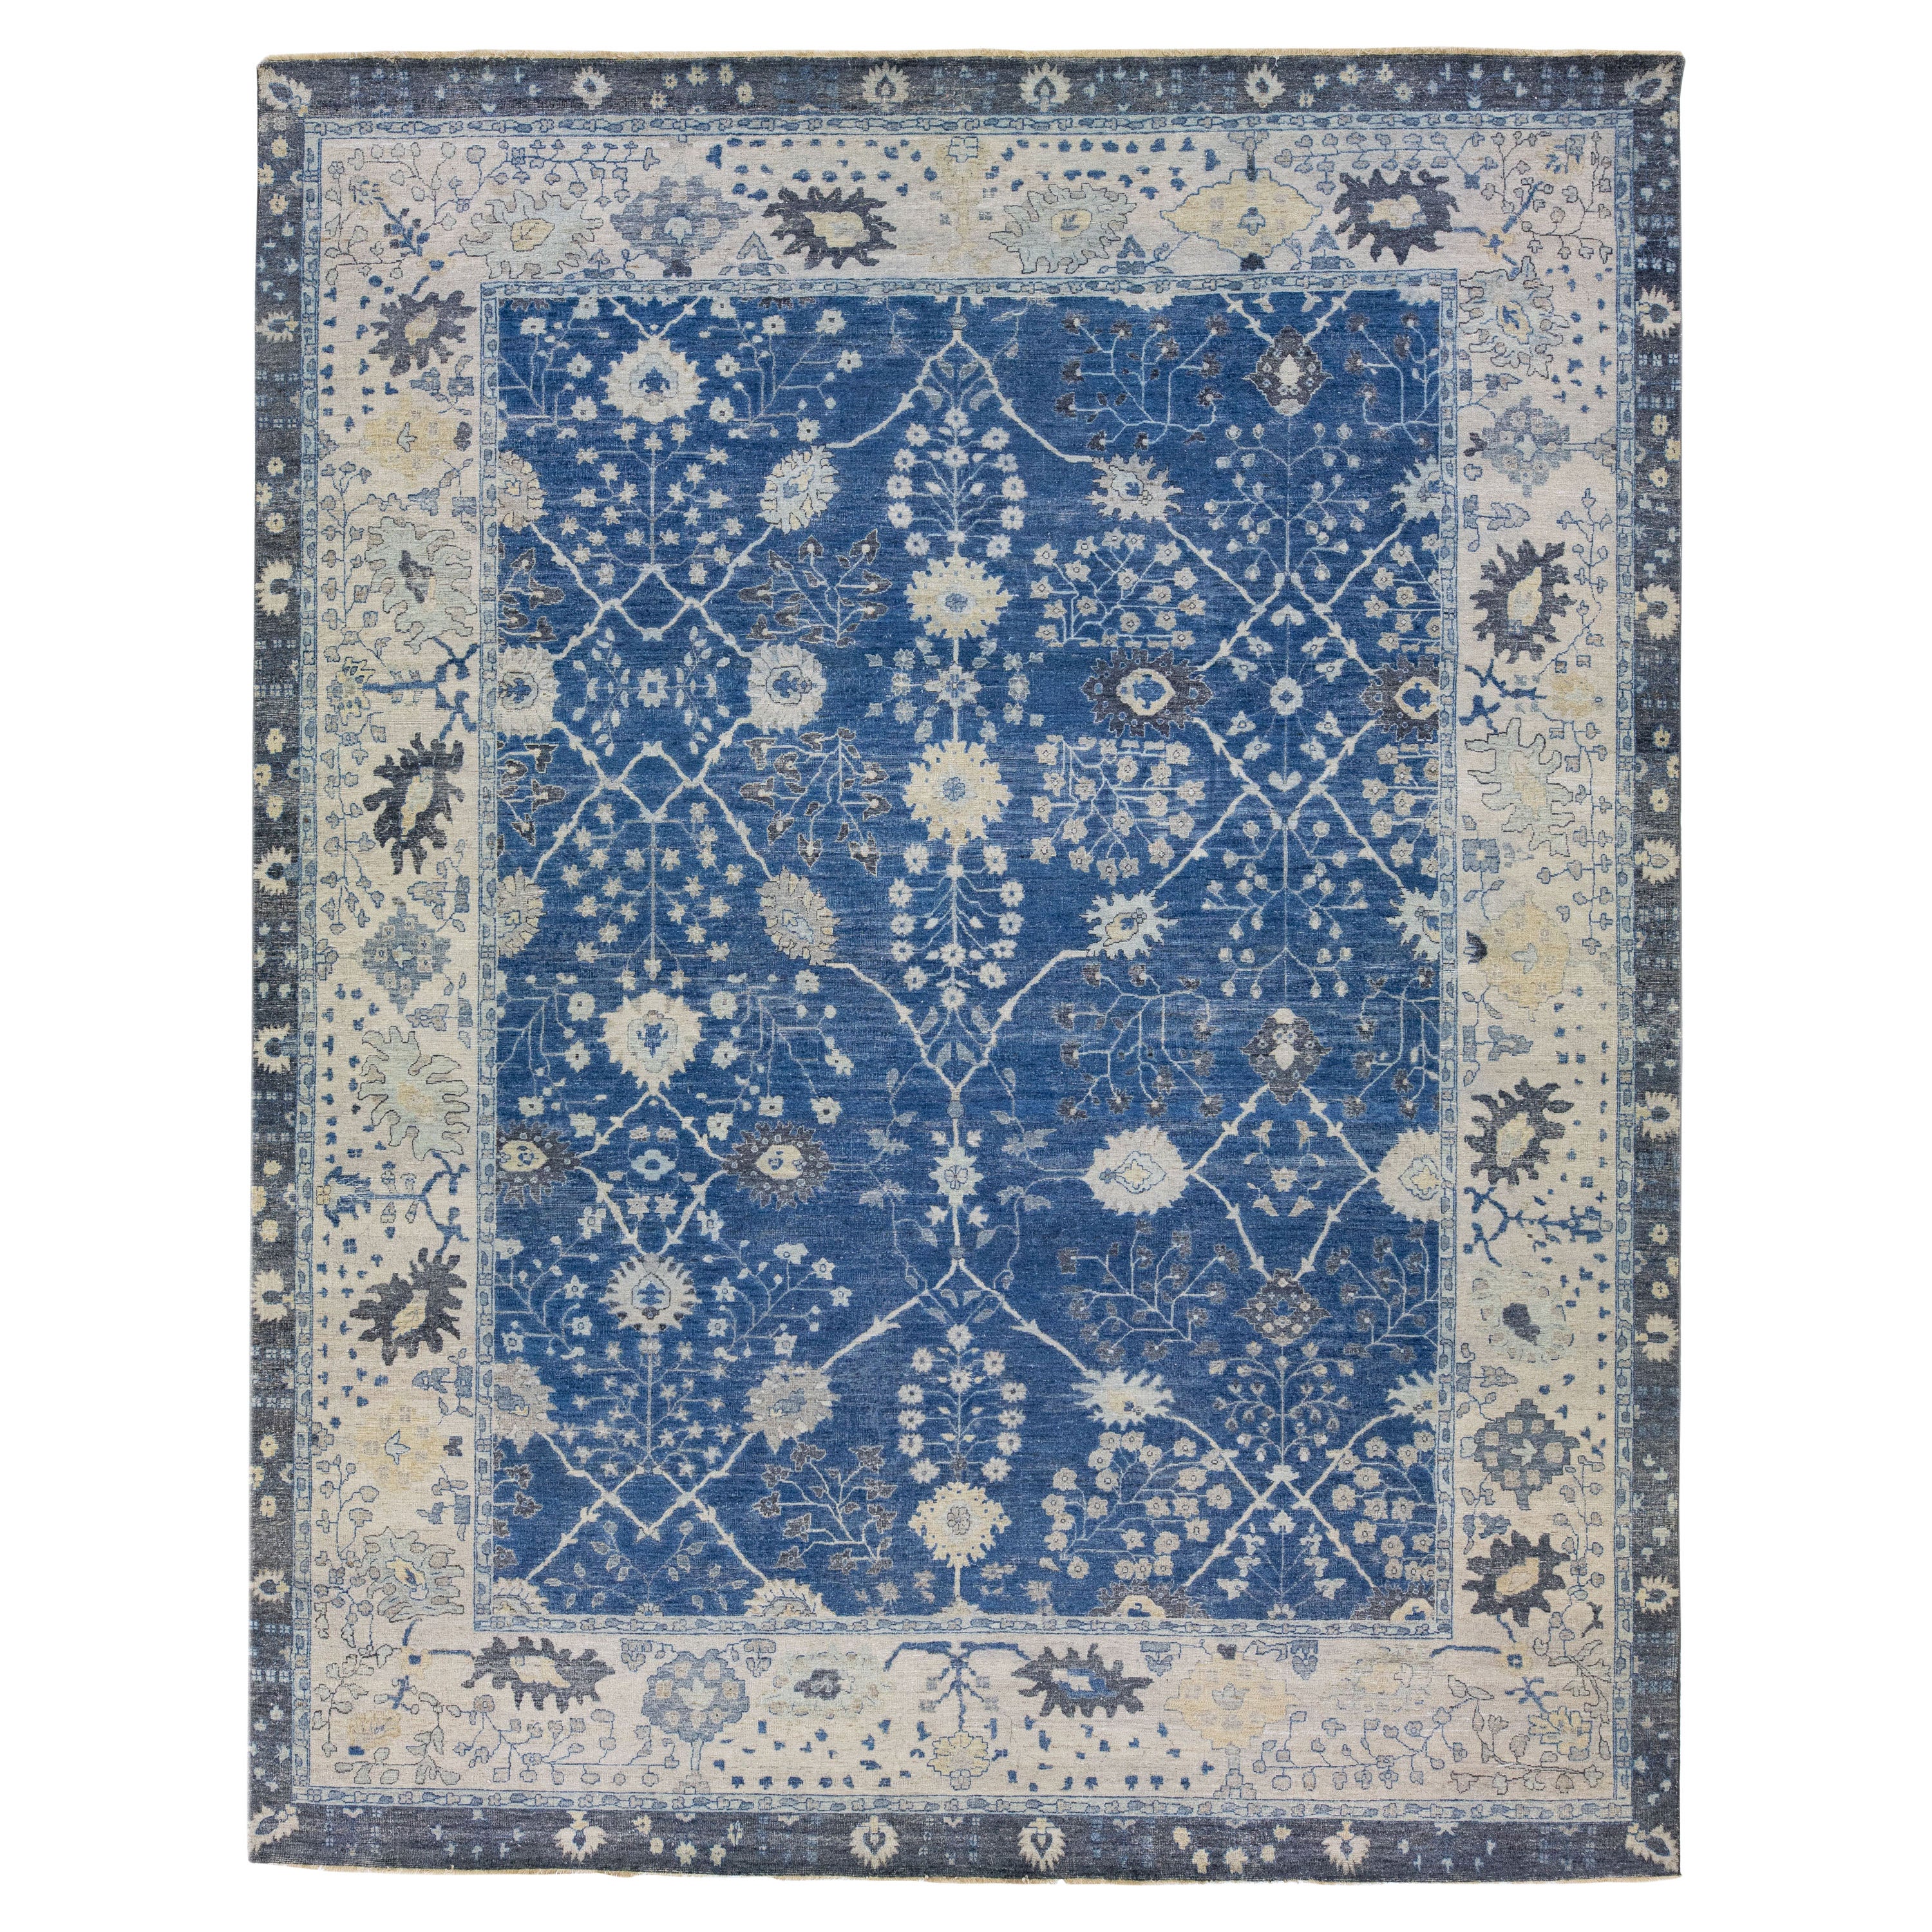 Tapis en laine indienne bleu de la collection artisanale Apadana à motifs floraux faits à la main